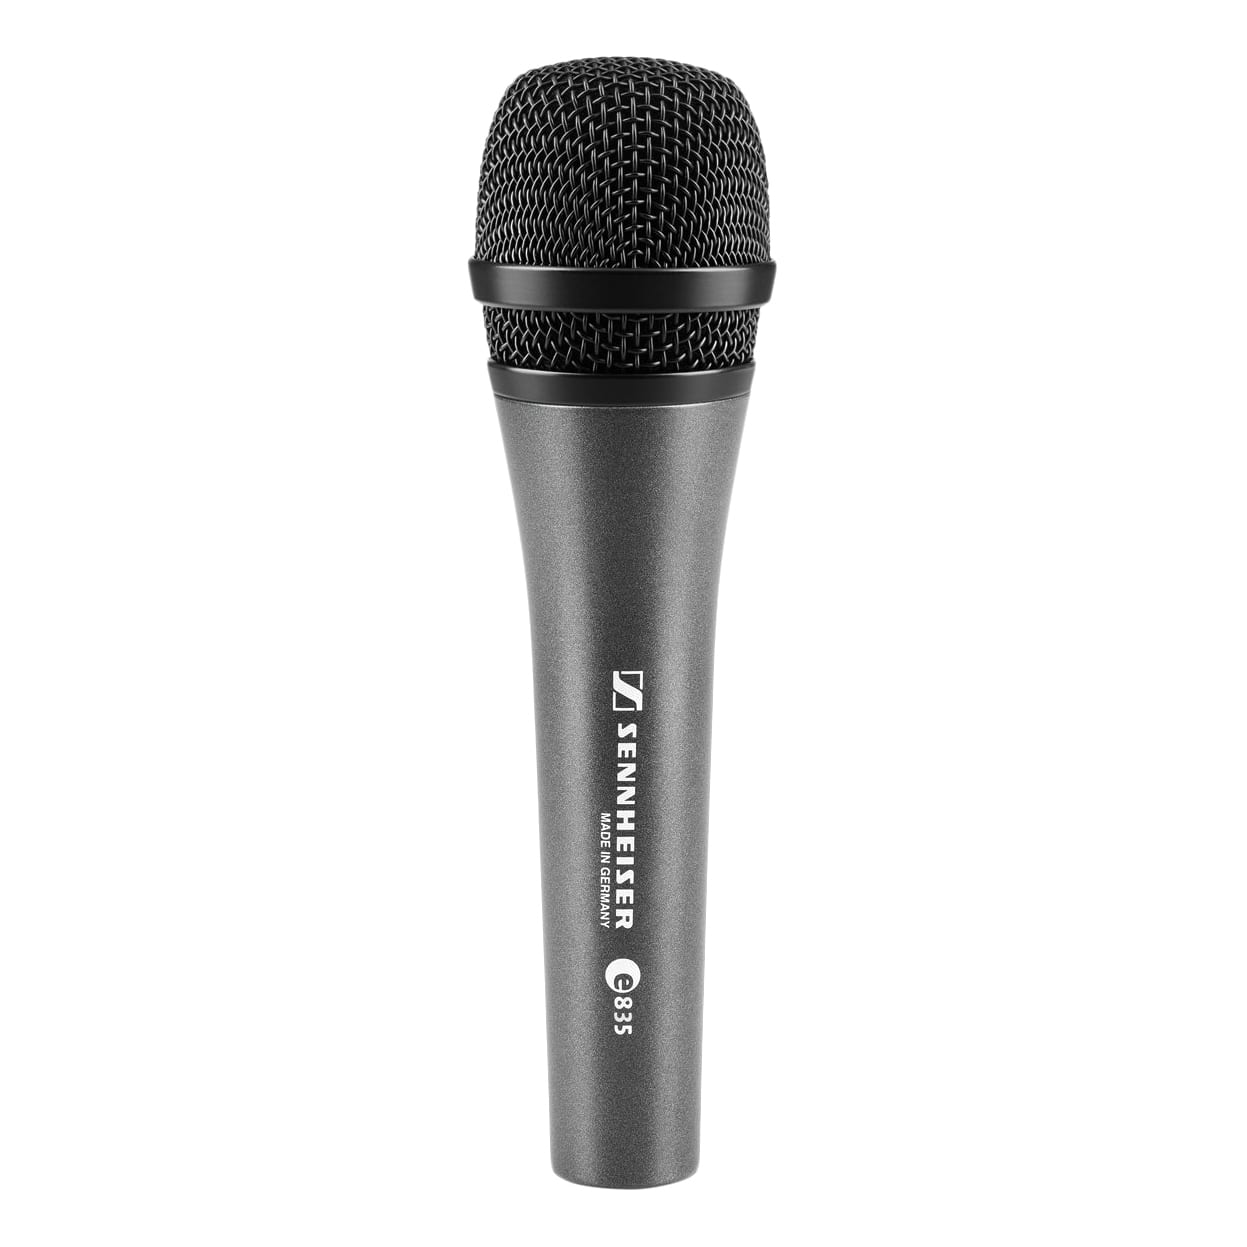 Ручные микрофоны Sennheiser E835 инсталляционные микрофоны sennheiser me 36